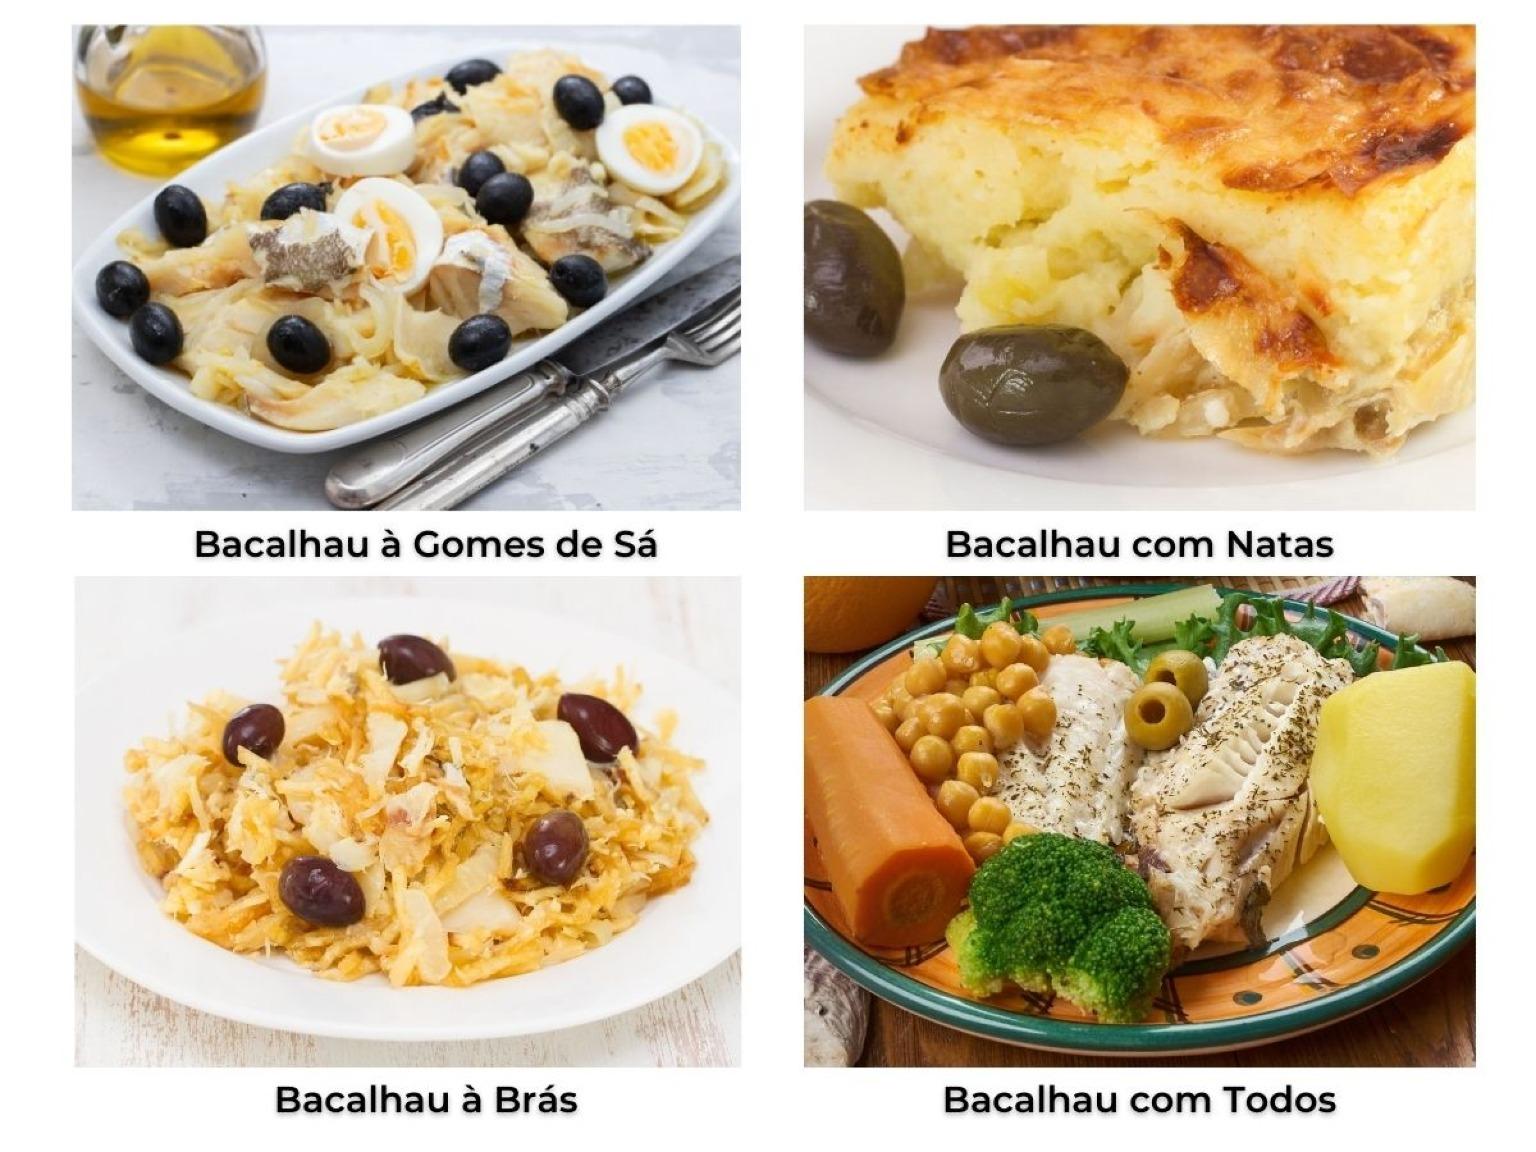 Cuatro deliciosos platos de Bacalhau, una tradición navideña portuguesa